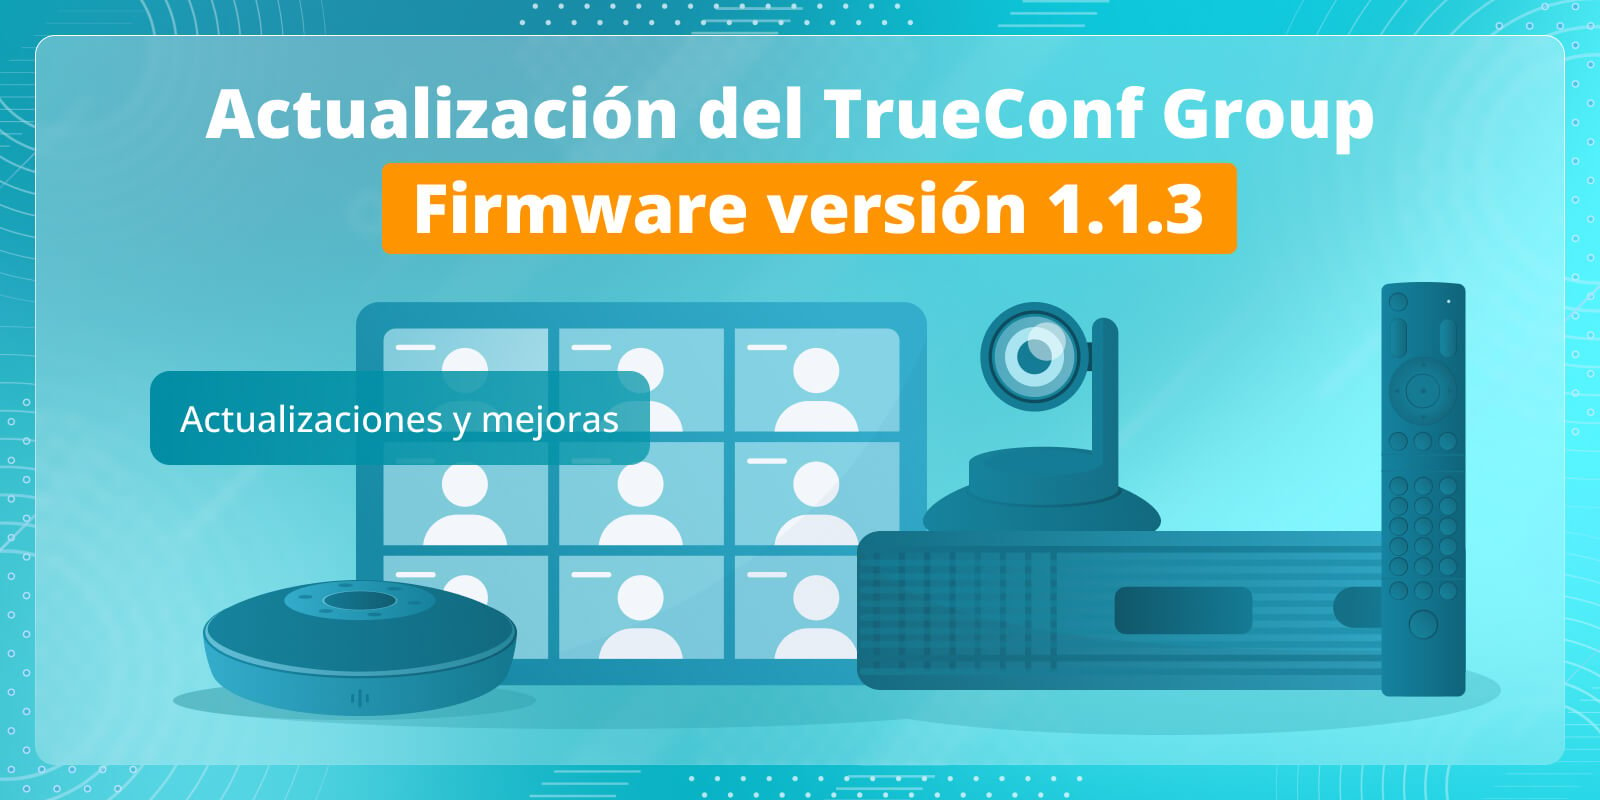 TrueConf Group 1.1.3: actualizaciones y mejoras 8